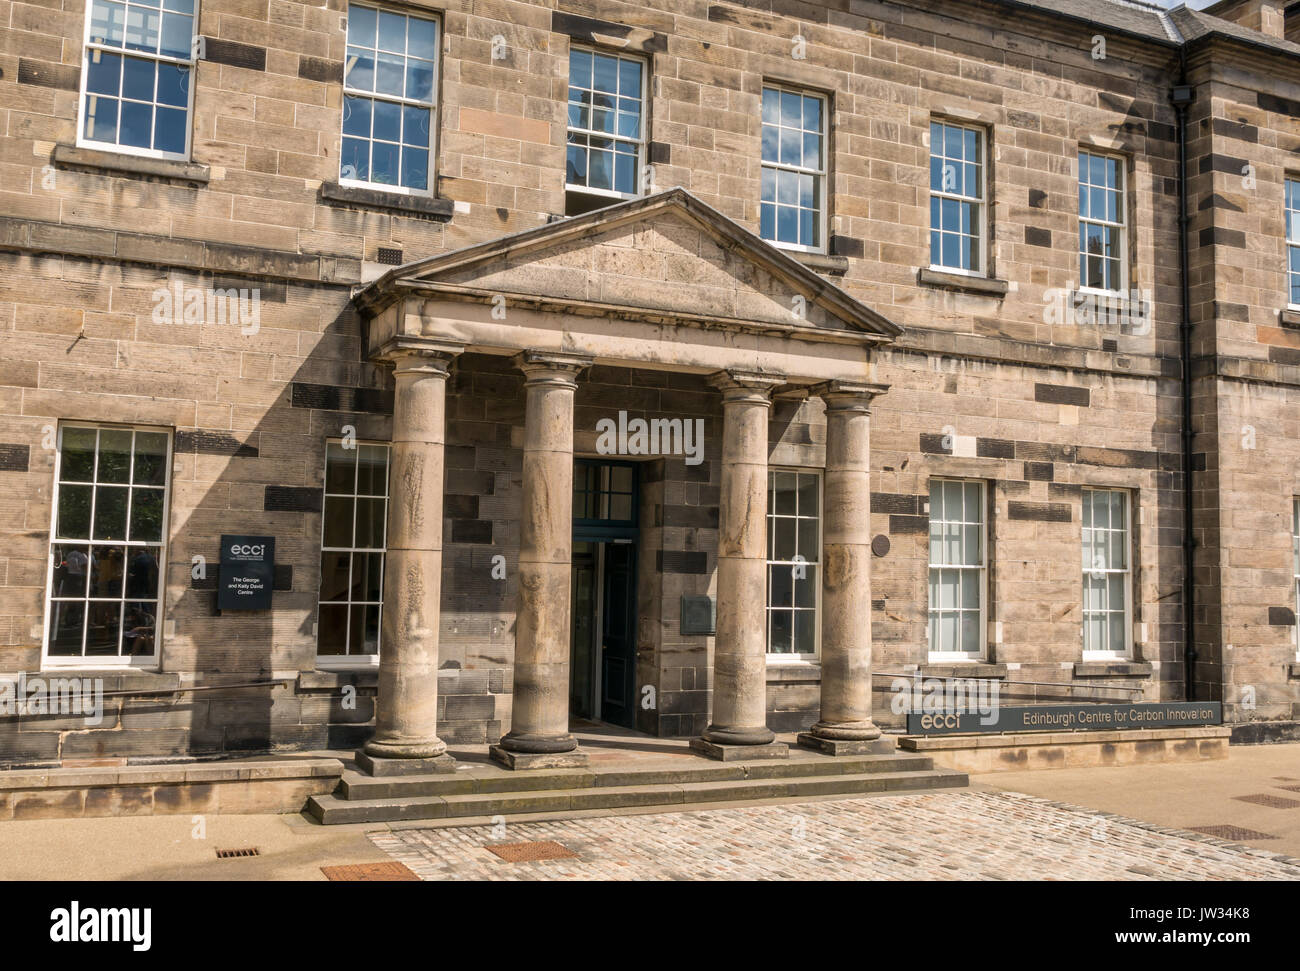 Old Royal Infirmary, Édimbourg, où Conan Doyle a étudié la médecine en vertu de Joseph Bell, inspiration pour Sherlock Holmes, maintenant l'Université d'Édimbourg Banque D'Images